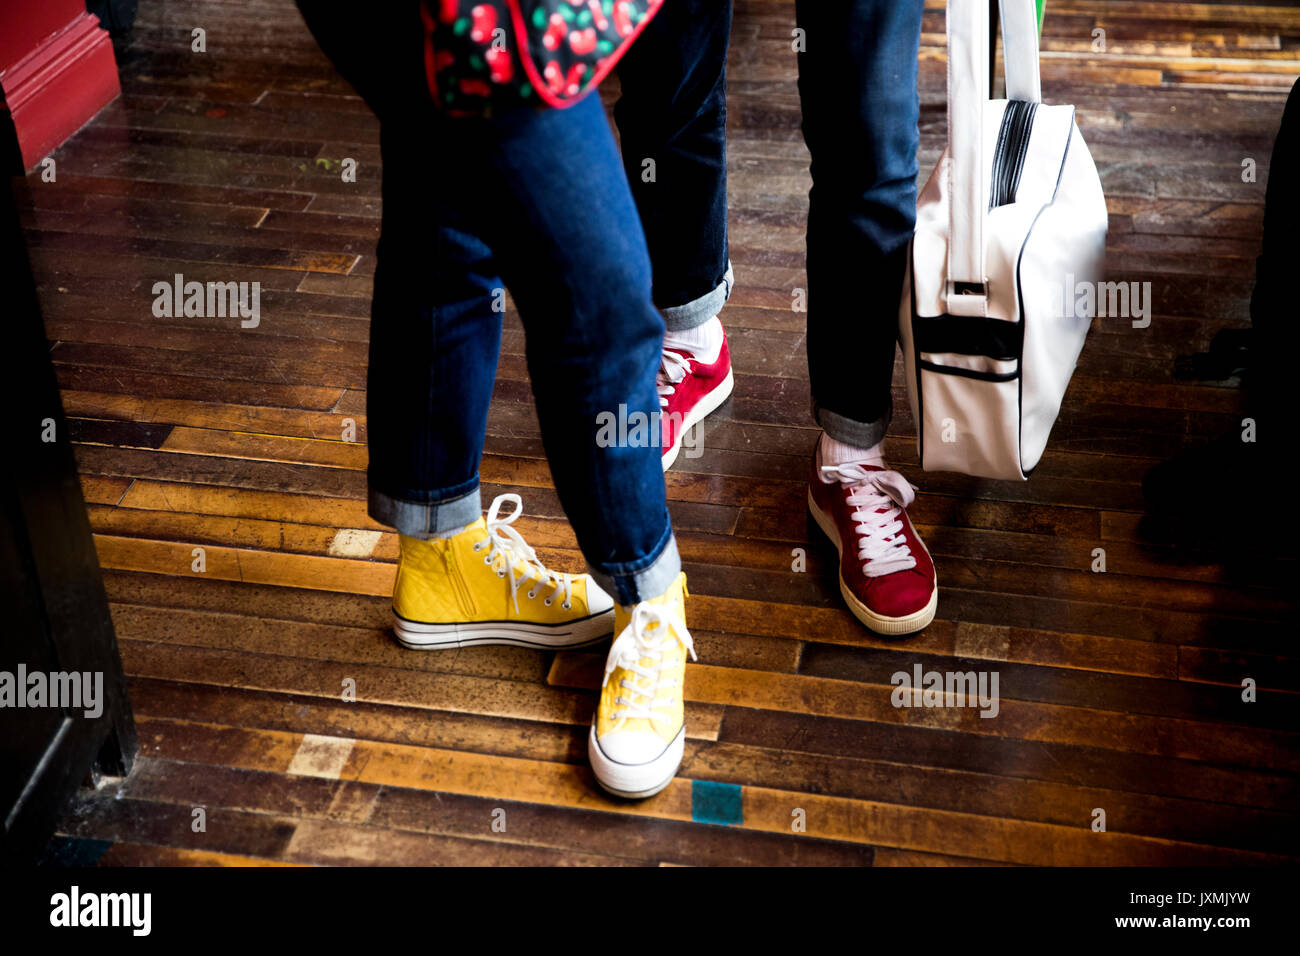 Les jeans et les chaussures portés par couple standing on wooden flooring Banque D'Images